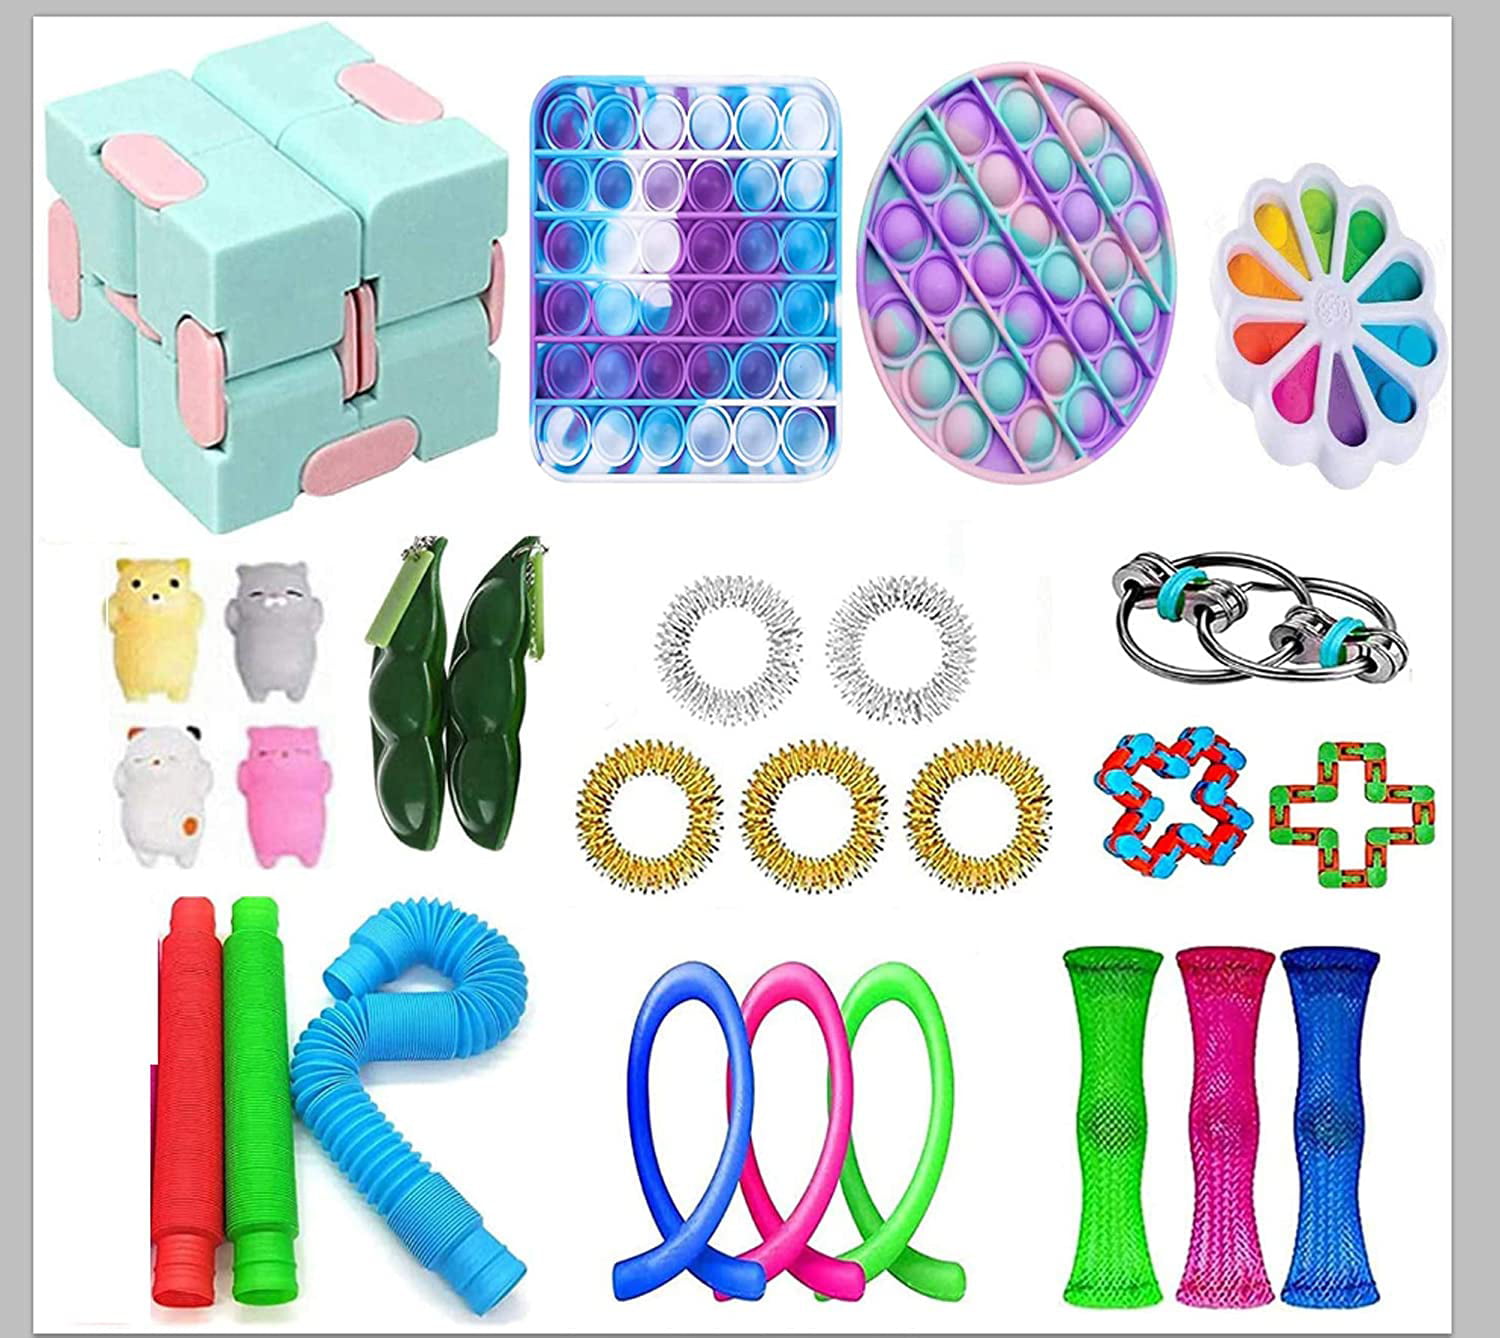 Details about   Pop Its Push it Bubble Fidget Rainbow Sensory Simple Dimple Toy Stress Relief 